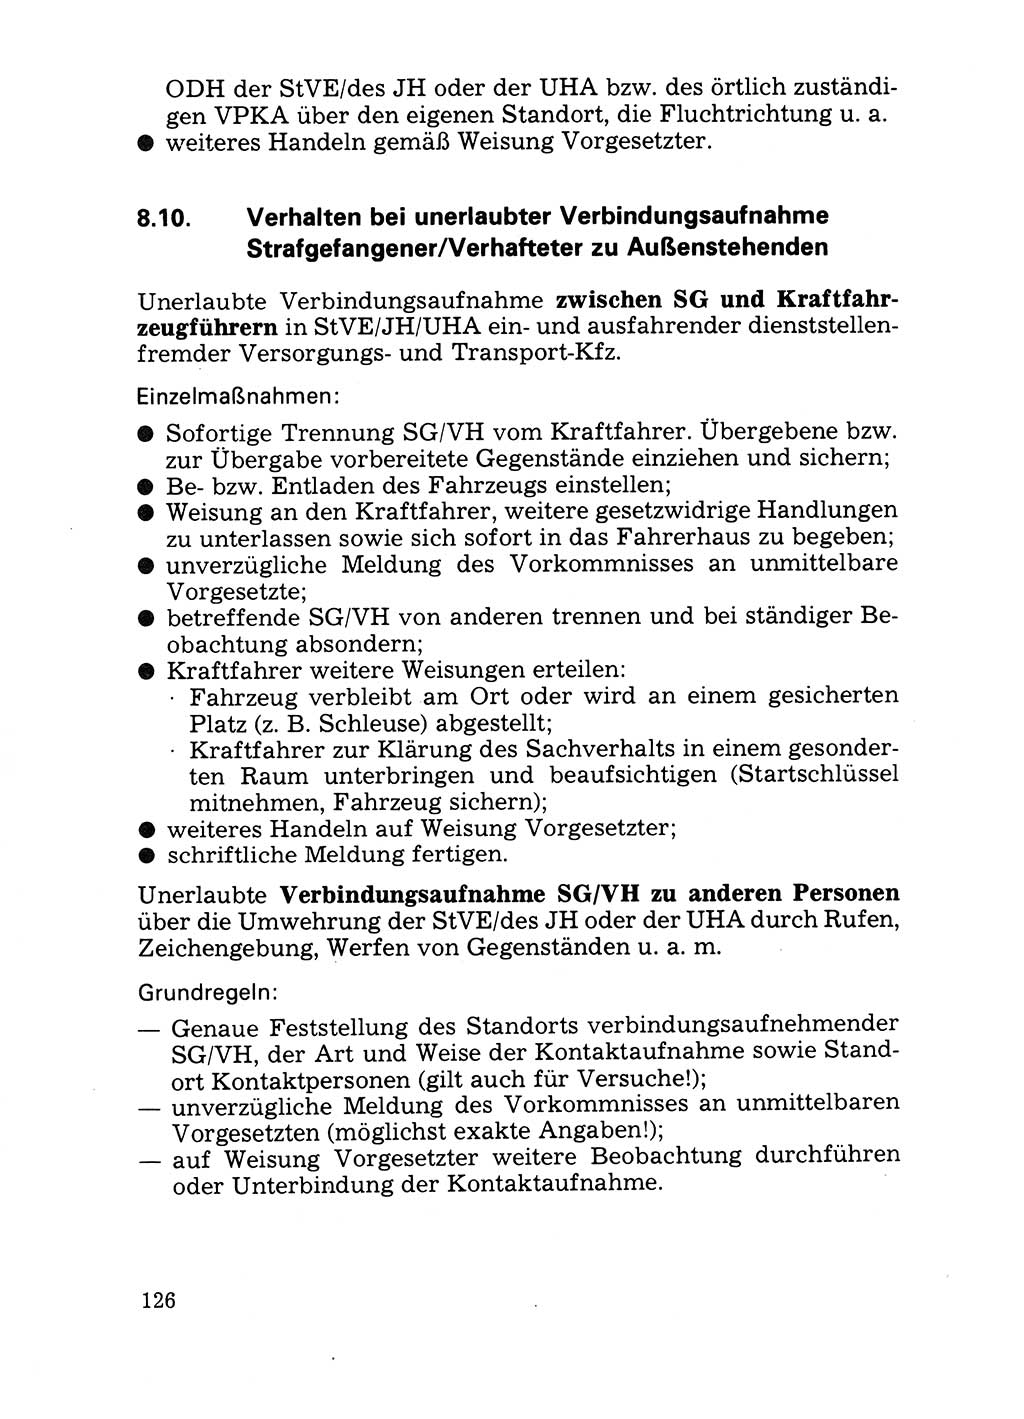 Handbuch für operative Dienste, Abteilung Strafvollzug (SV) [Ministerium des Innern (MdI) Deutsche Demokratische Republik (DDR)] 1981, Seite 126 (Hb. op. D. Abt. SV MdI DDR 1981, S. 126)